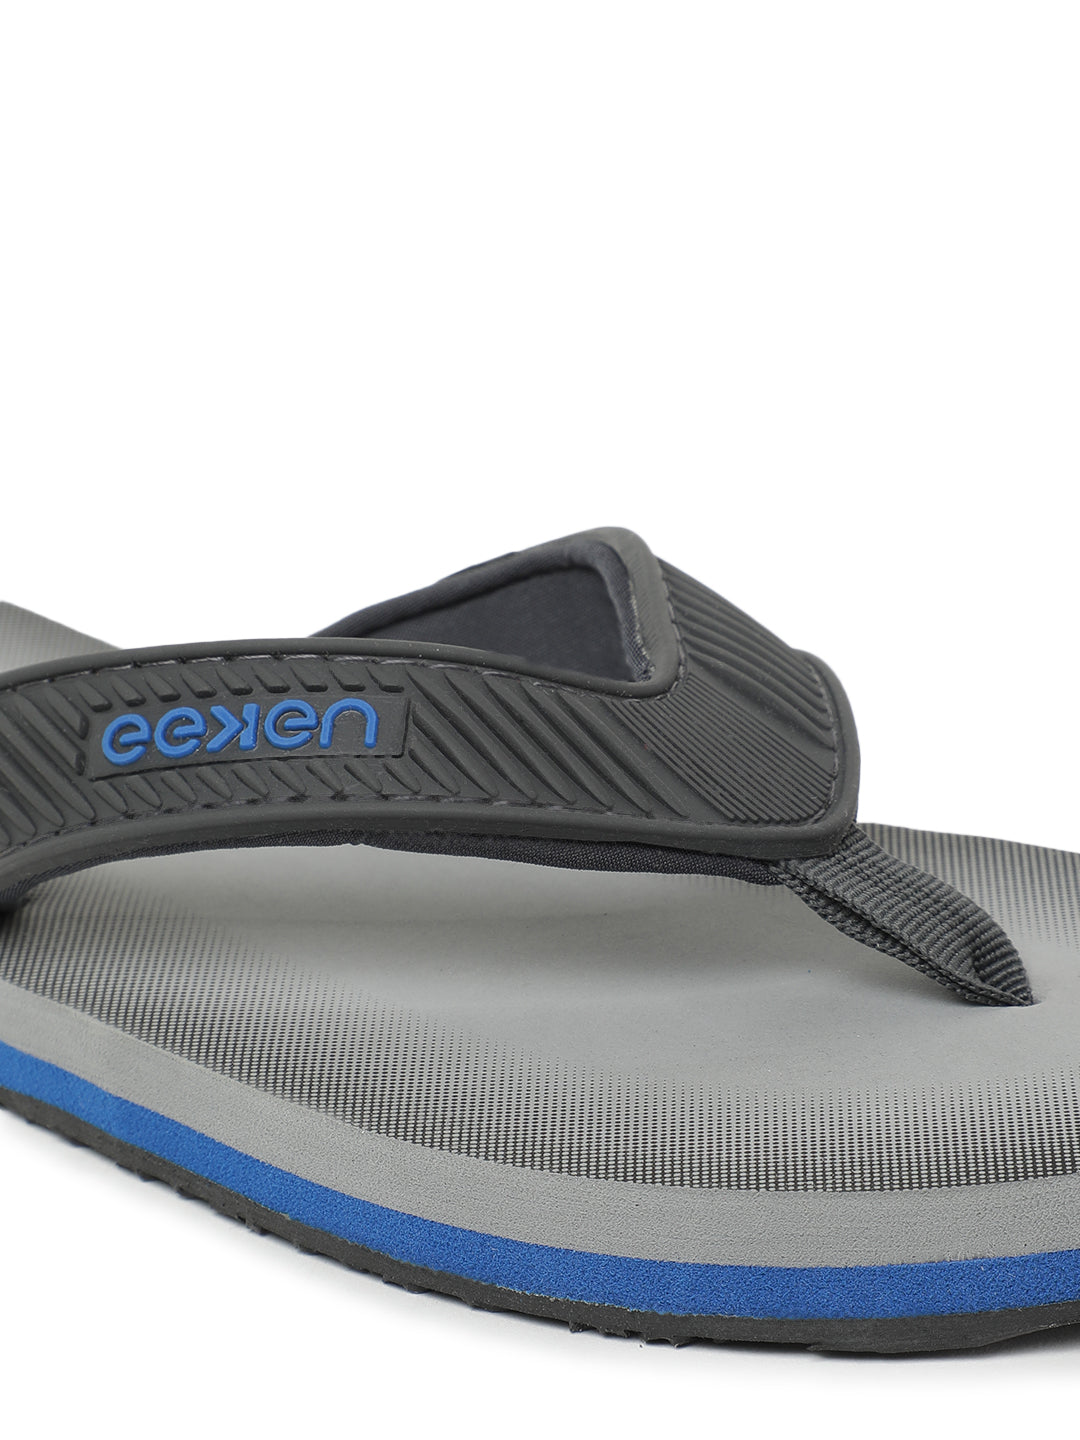 Eeken Grey Classic Flip Flops For Men